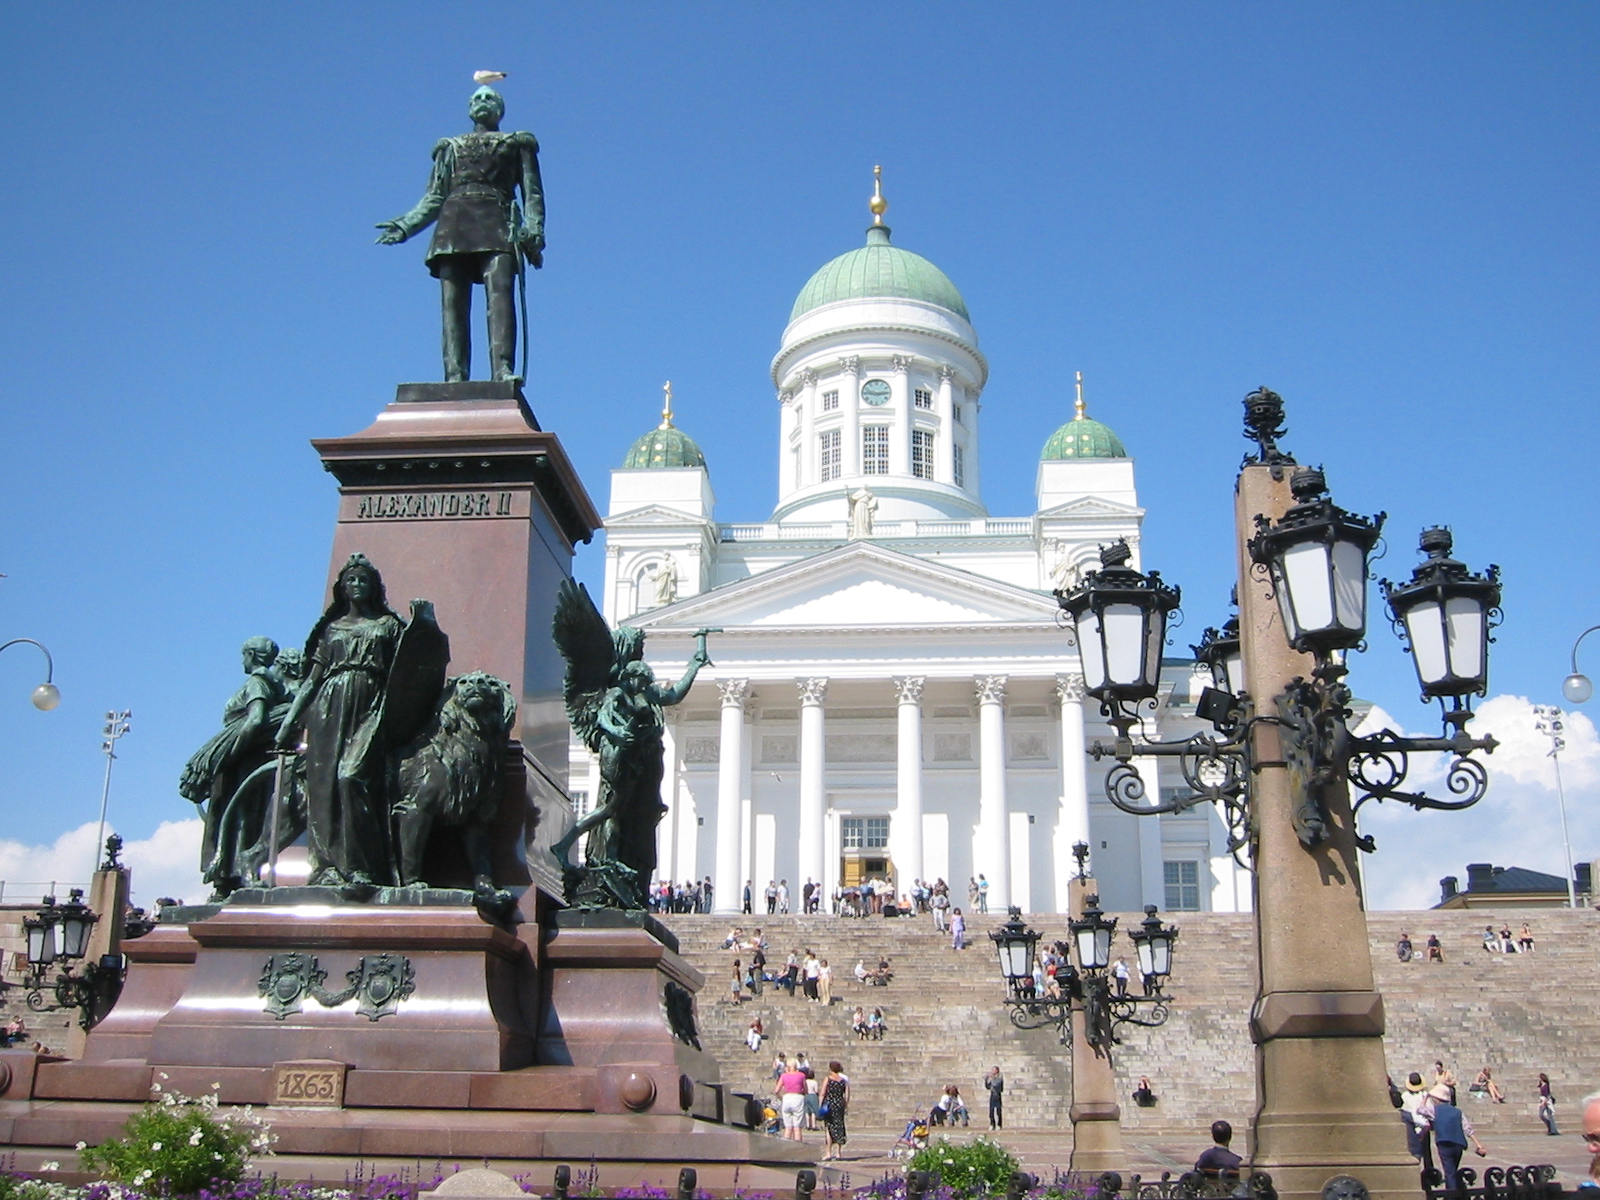 Helsinki City Tour, and IAN?!